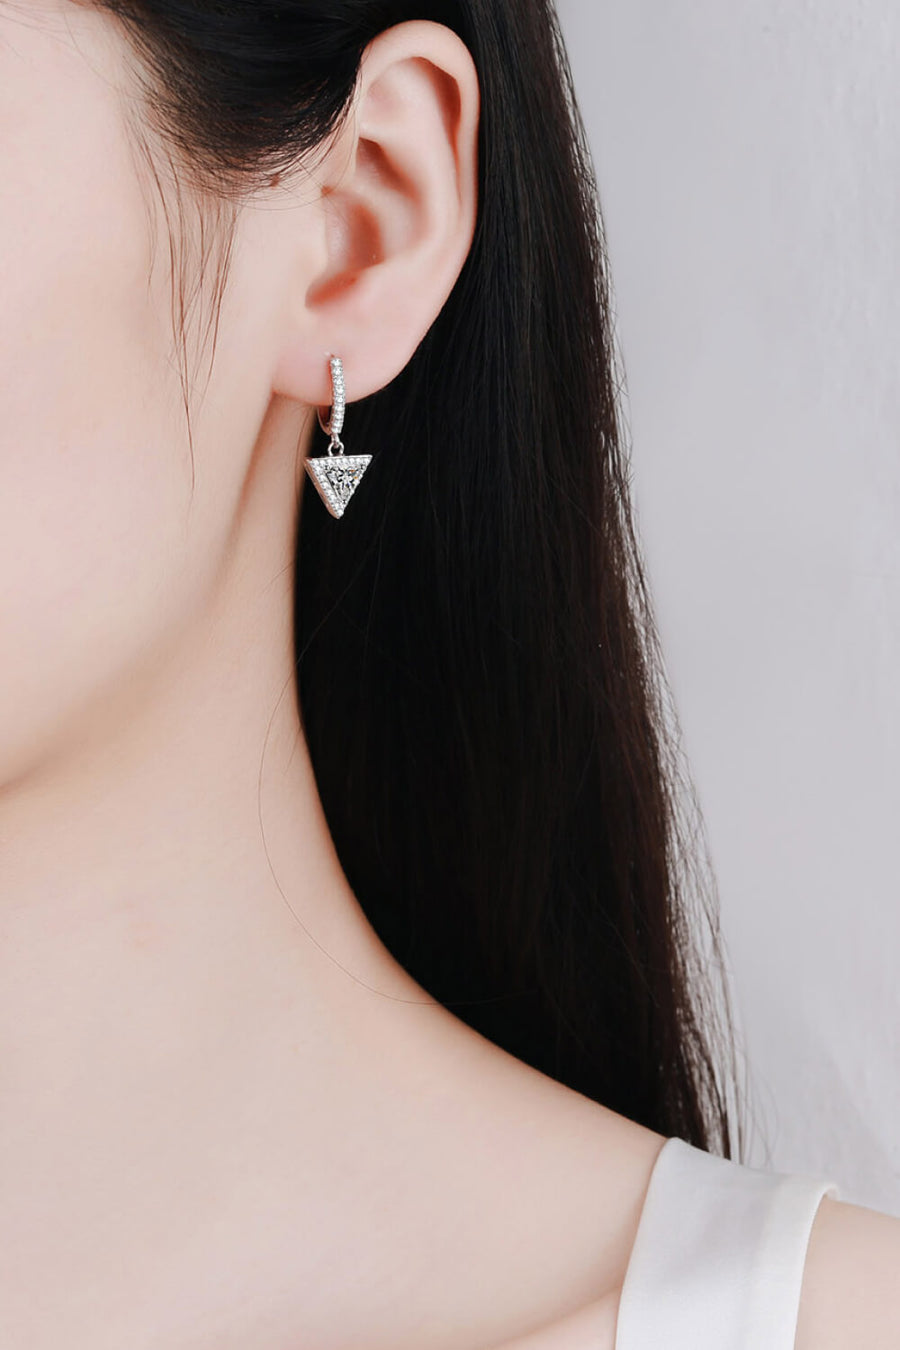 Best Diamond Earrings Jewelry Gifts for Women | 1 Carat Diamond Triangle Drop Earrings | MASON New York